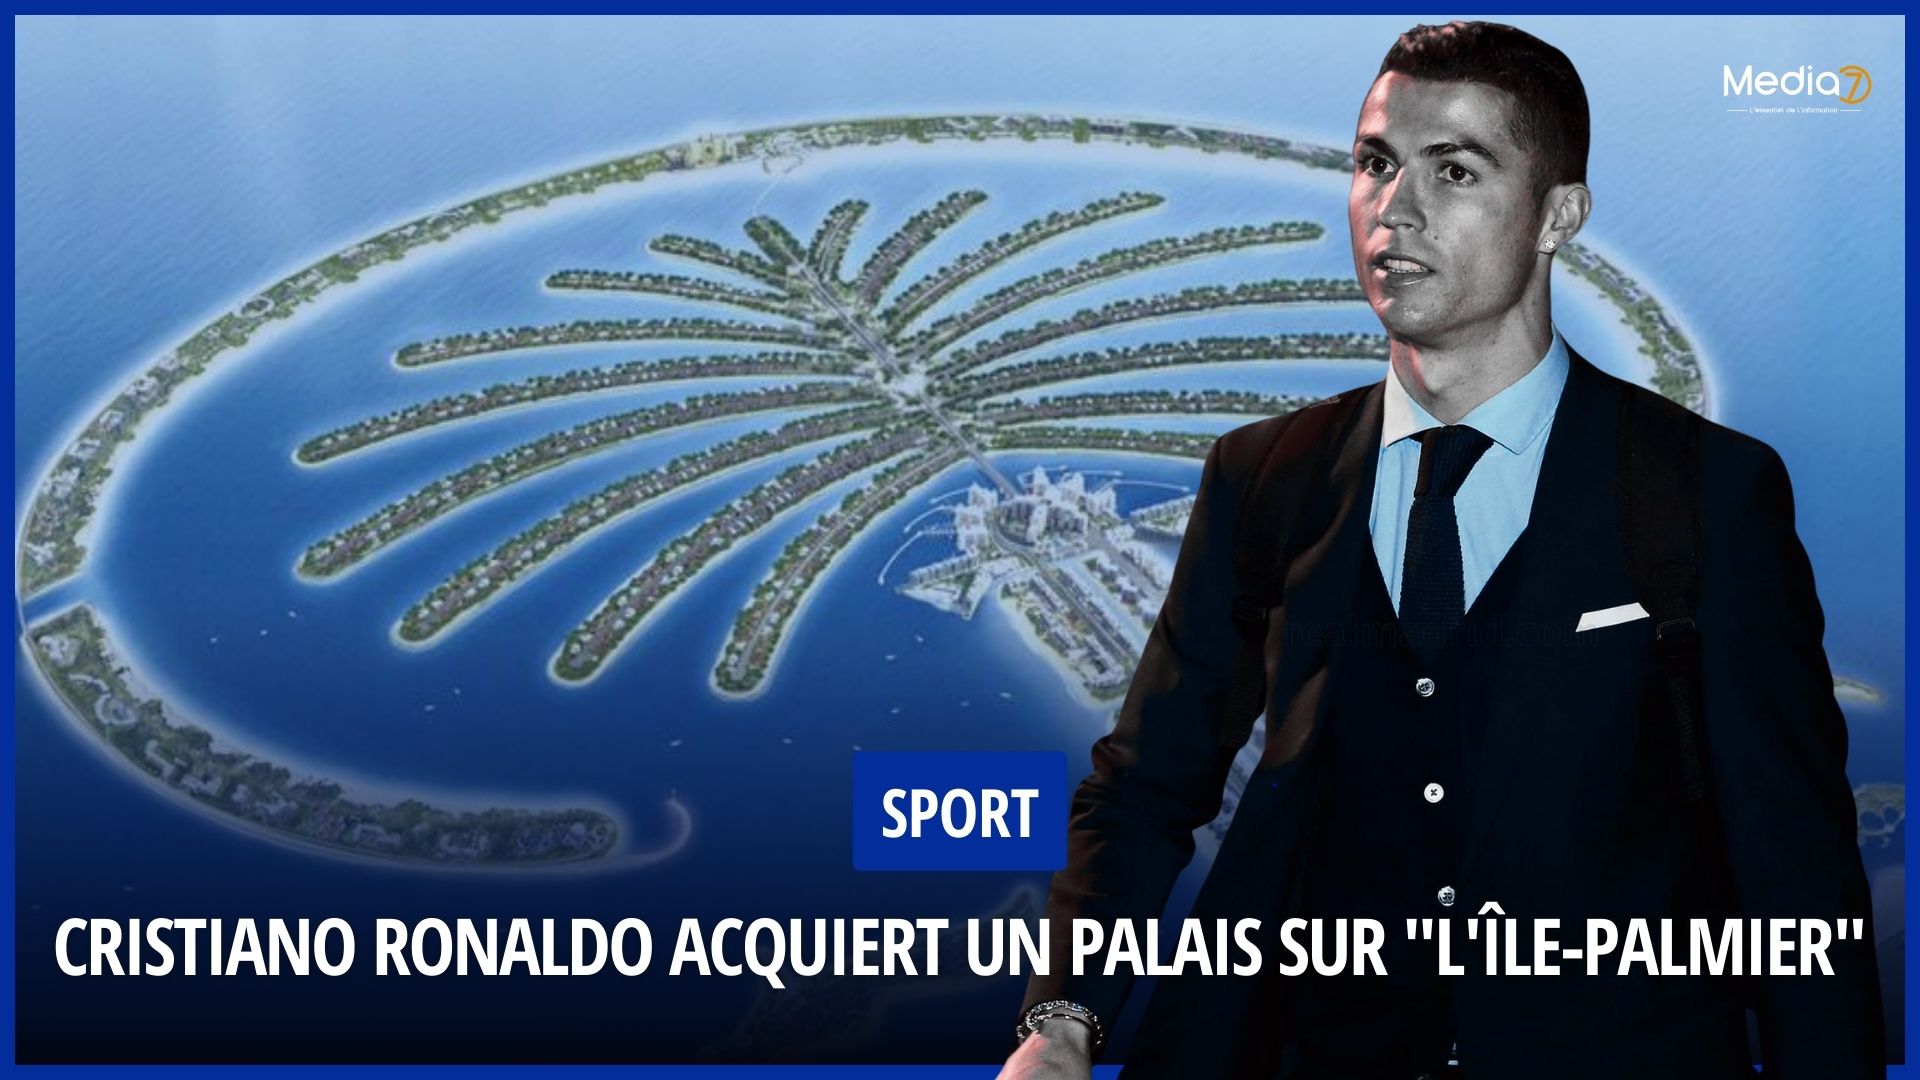 Cristiano Ronaldo Acquires a Palace on “Palm Island” in Dubai - Media7